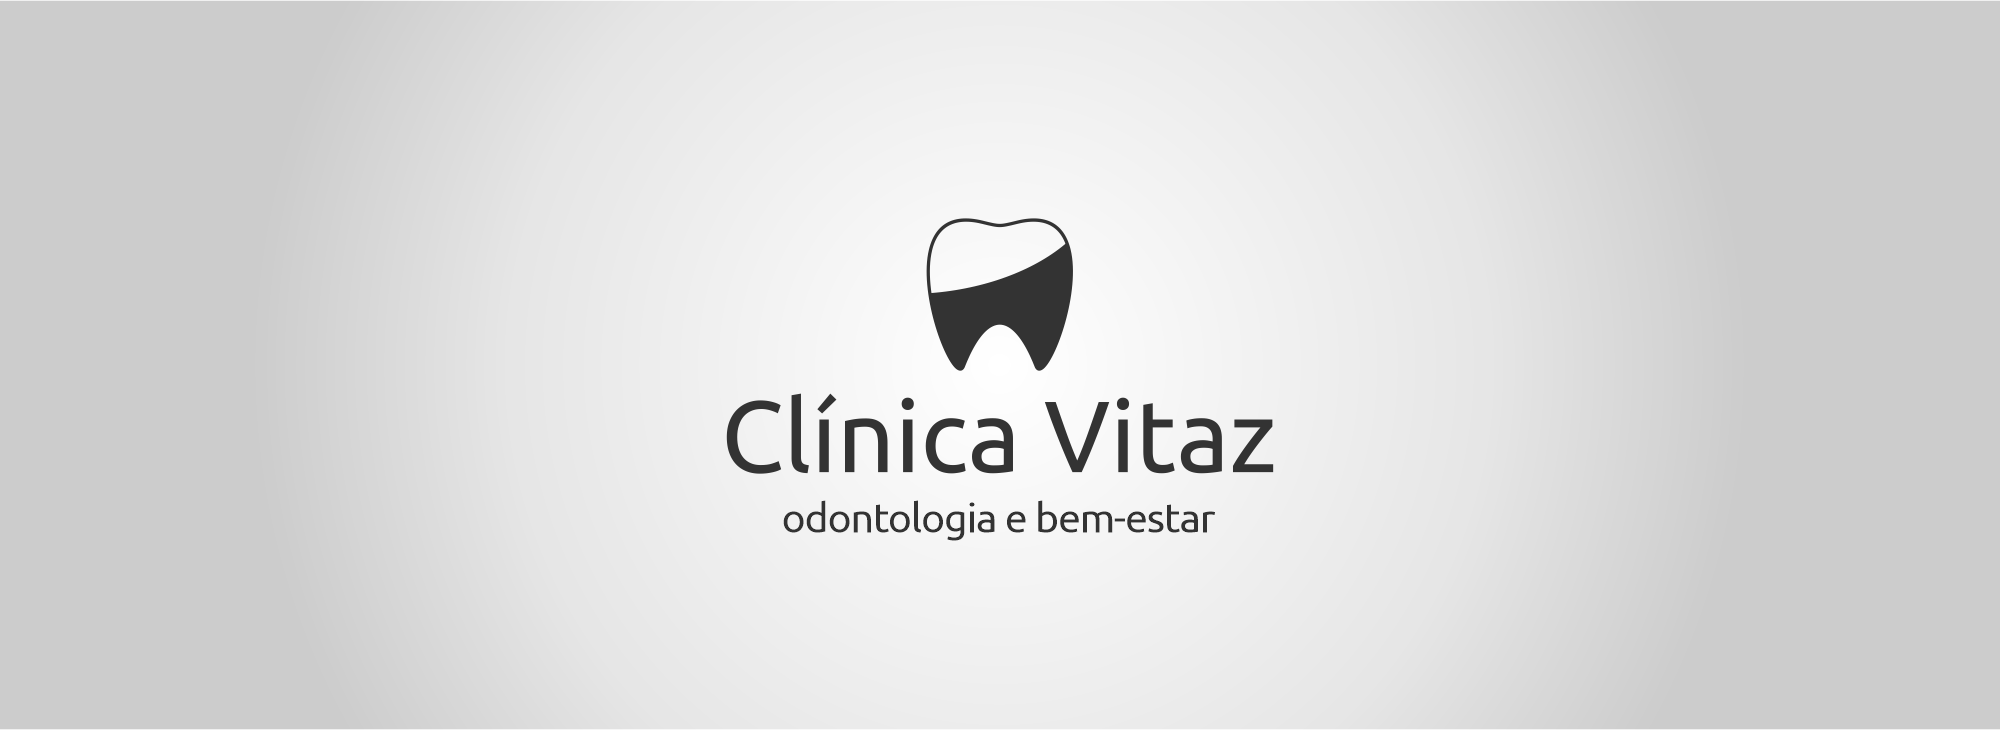 banner página inicial - Clínica Vitaz | odontologia e bem estar - dentista sul da ilha